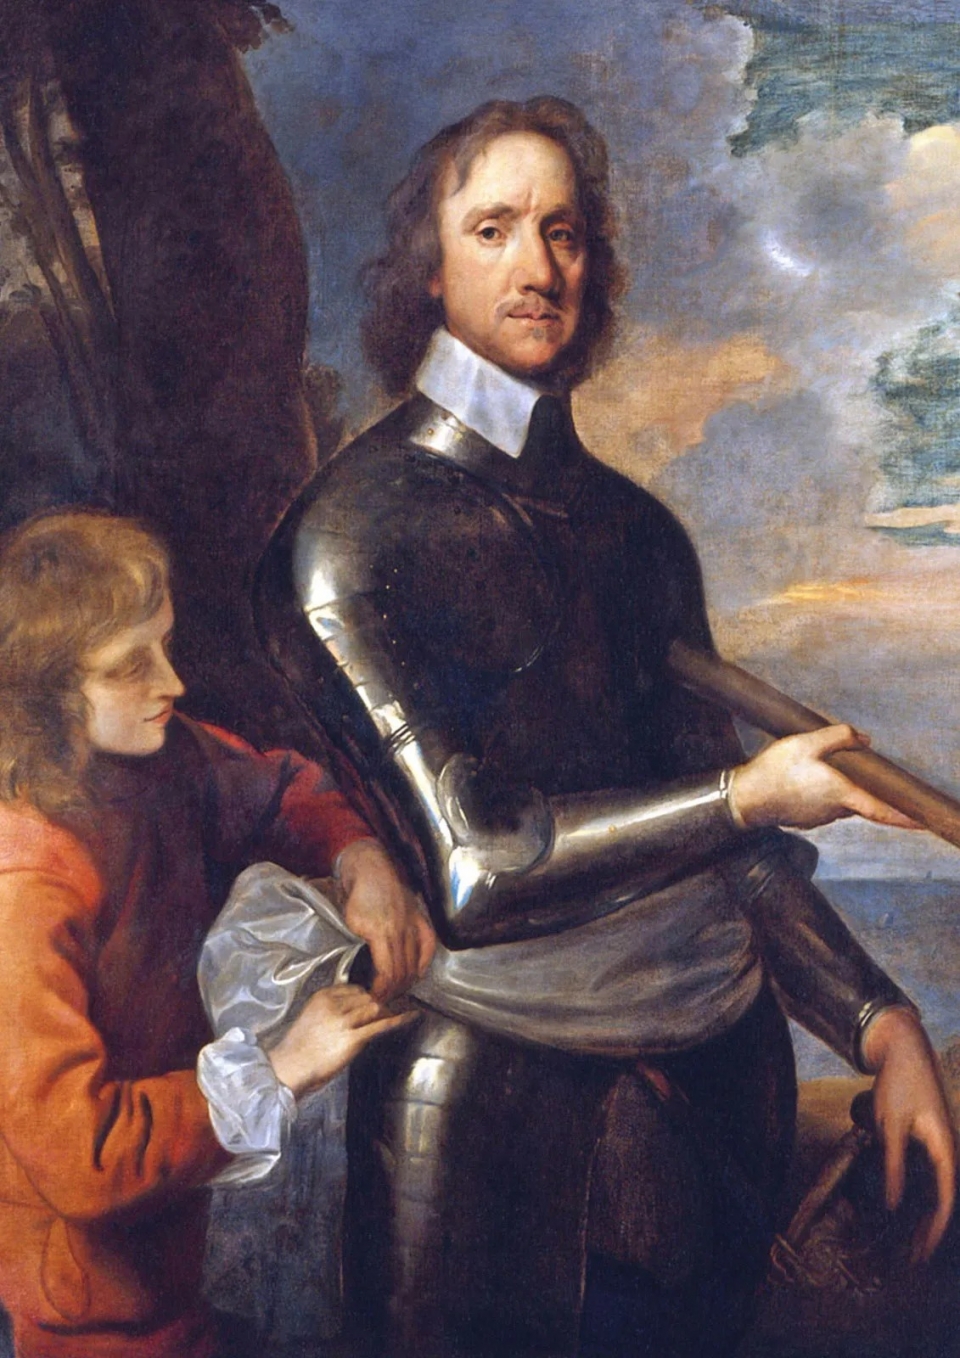 올리버 크롬웰의 초상화. 크롬웰은 의회를 장악하고 '신형군'을 조직하여 찰스 1세와 왕당파 세력을 격파했다. 종국엔 찰스 1세를 처형하는 데 이른다.